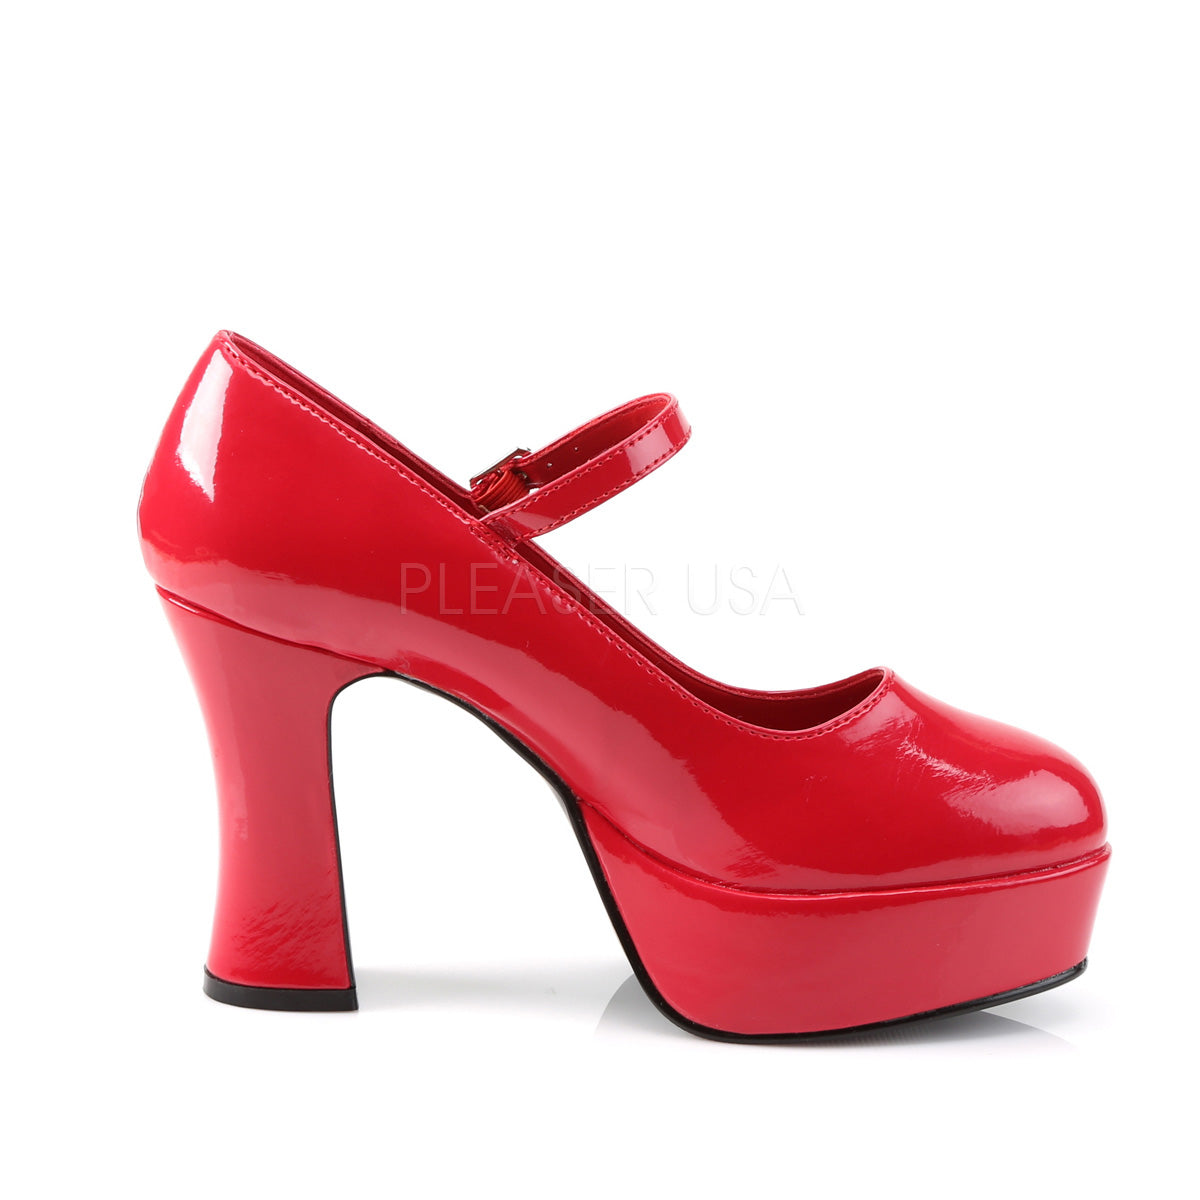 red platform large size high heels